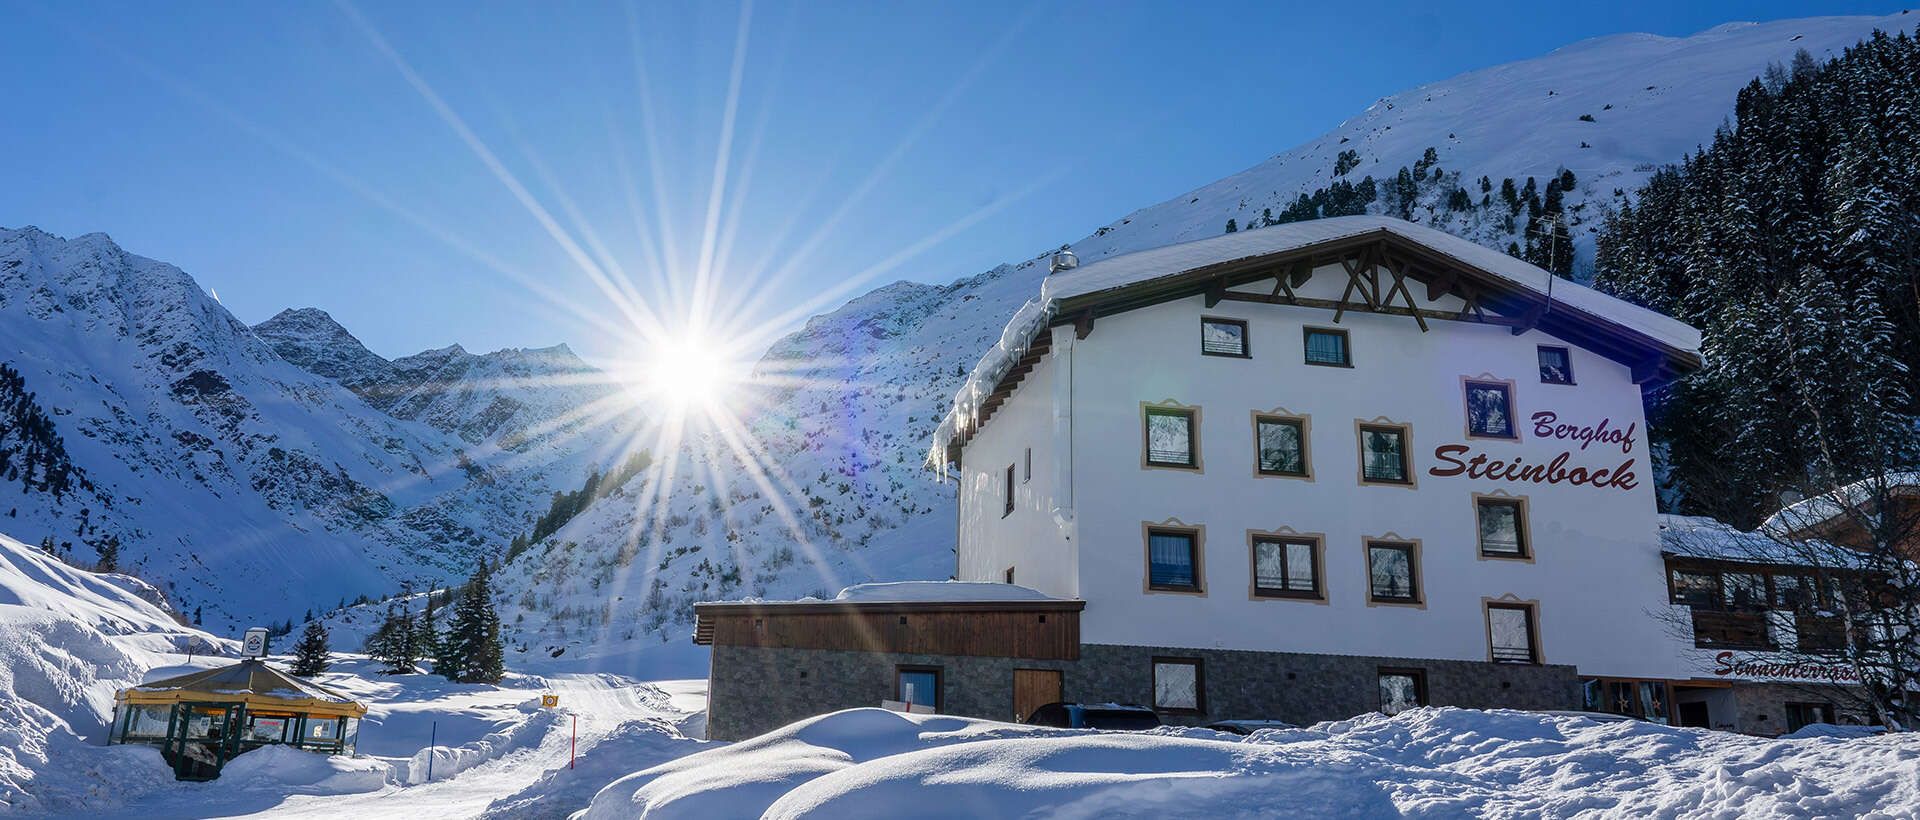 Hausansicht im Winter im Apart Berghof Steinbock in Tirol